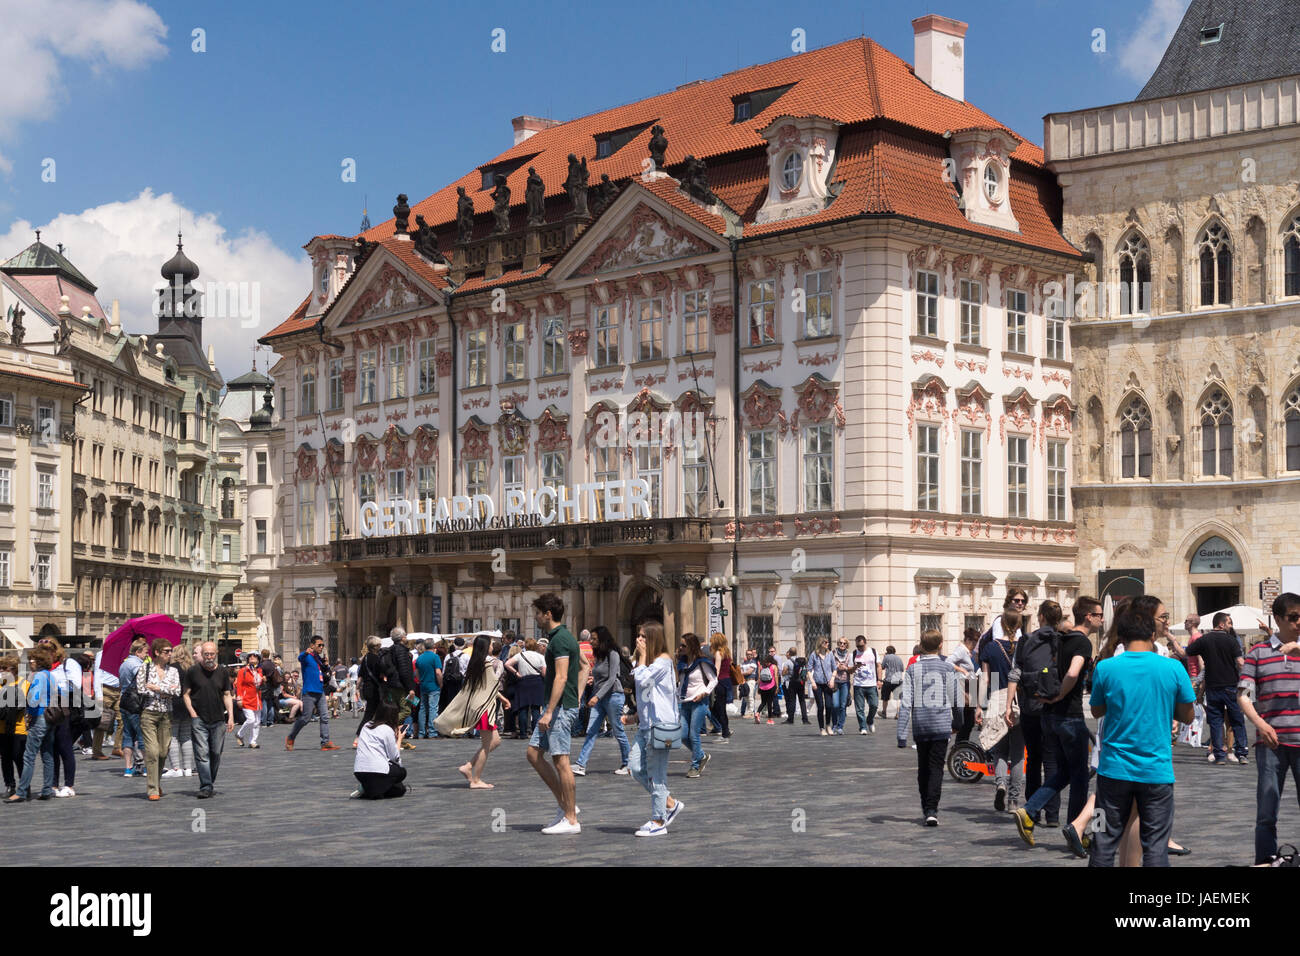 Kinský Palace sulla Piazza della Città Vecchia di Praga dispone di un attraente colore rosa e bianco facciata rococò e attualmente è una galleria d'arte (Národní galerie) Foto Stock